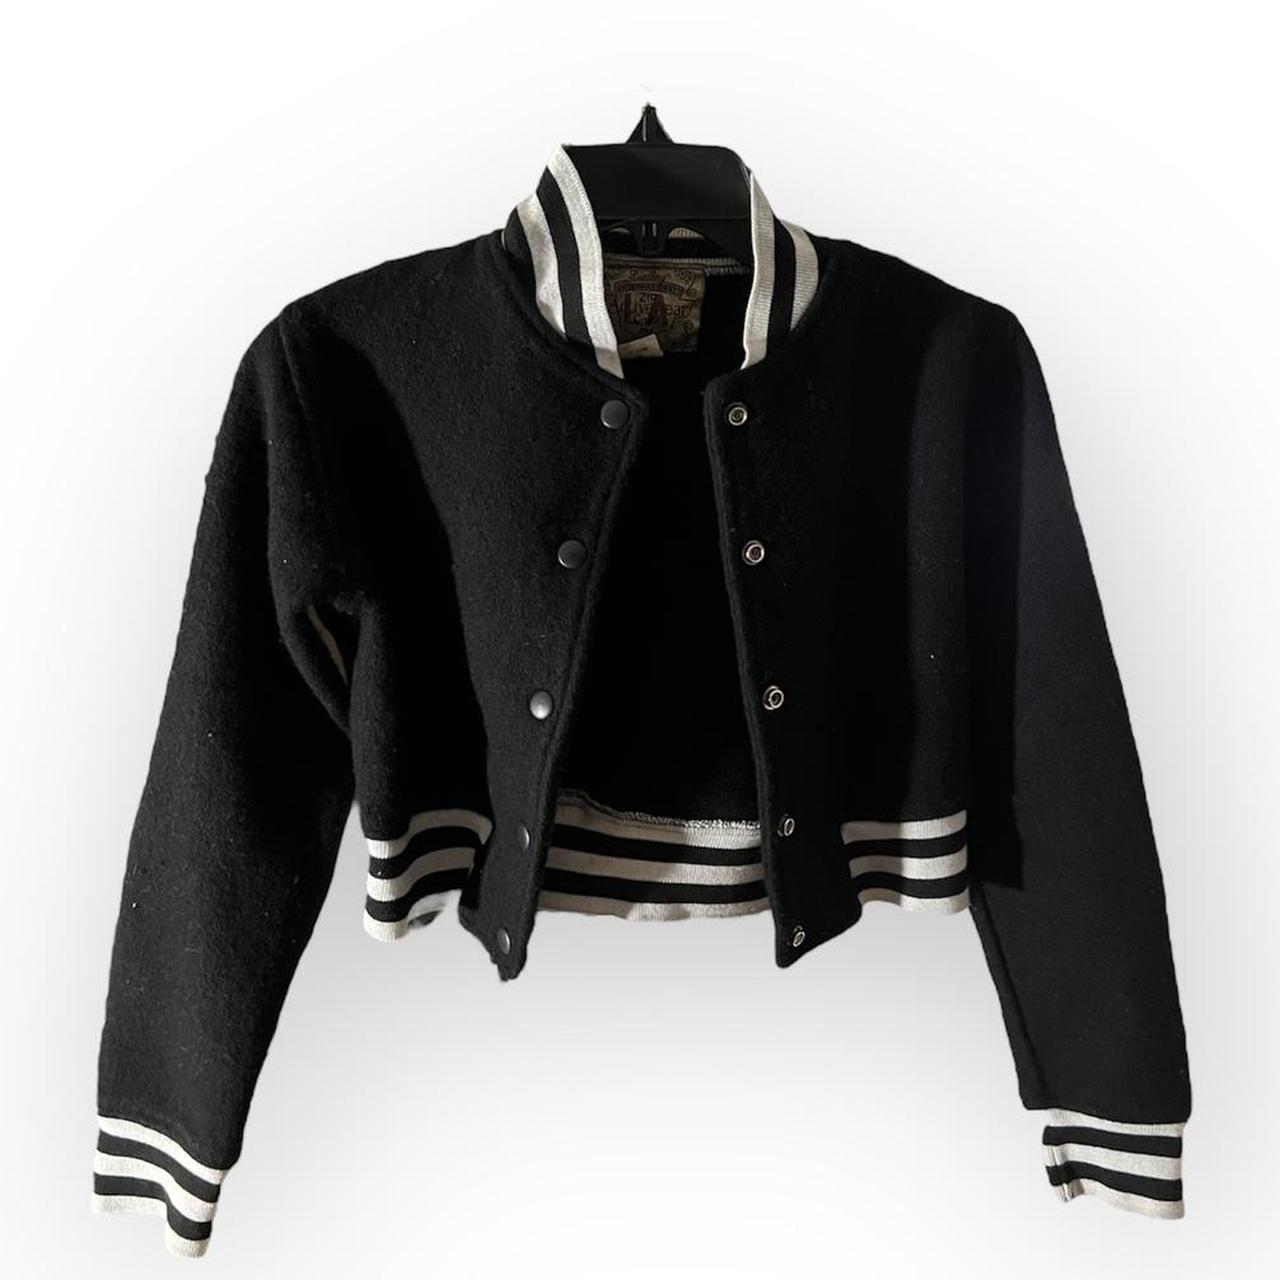 American Vintage Women's Varsity Jacket - Black - S